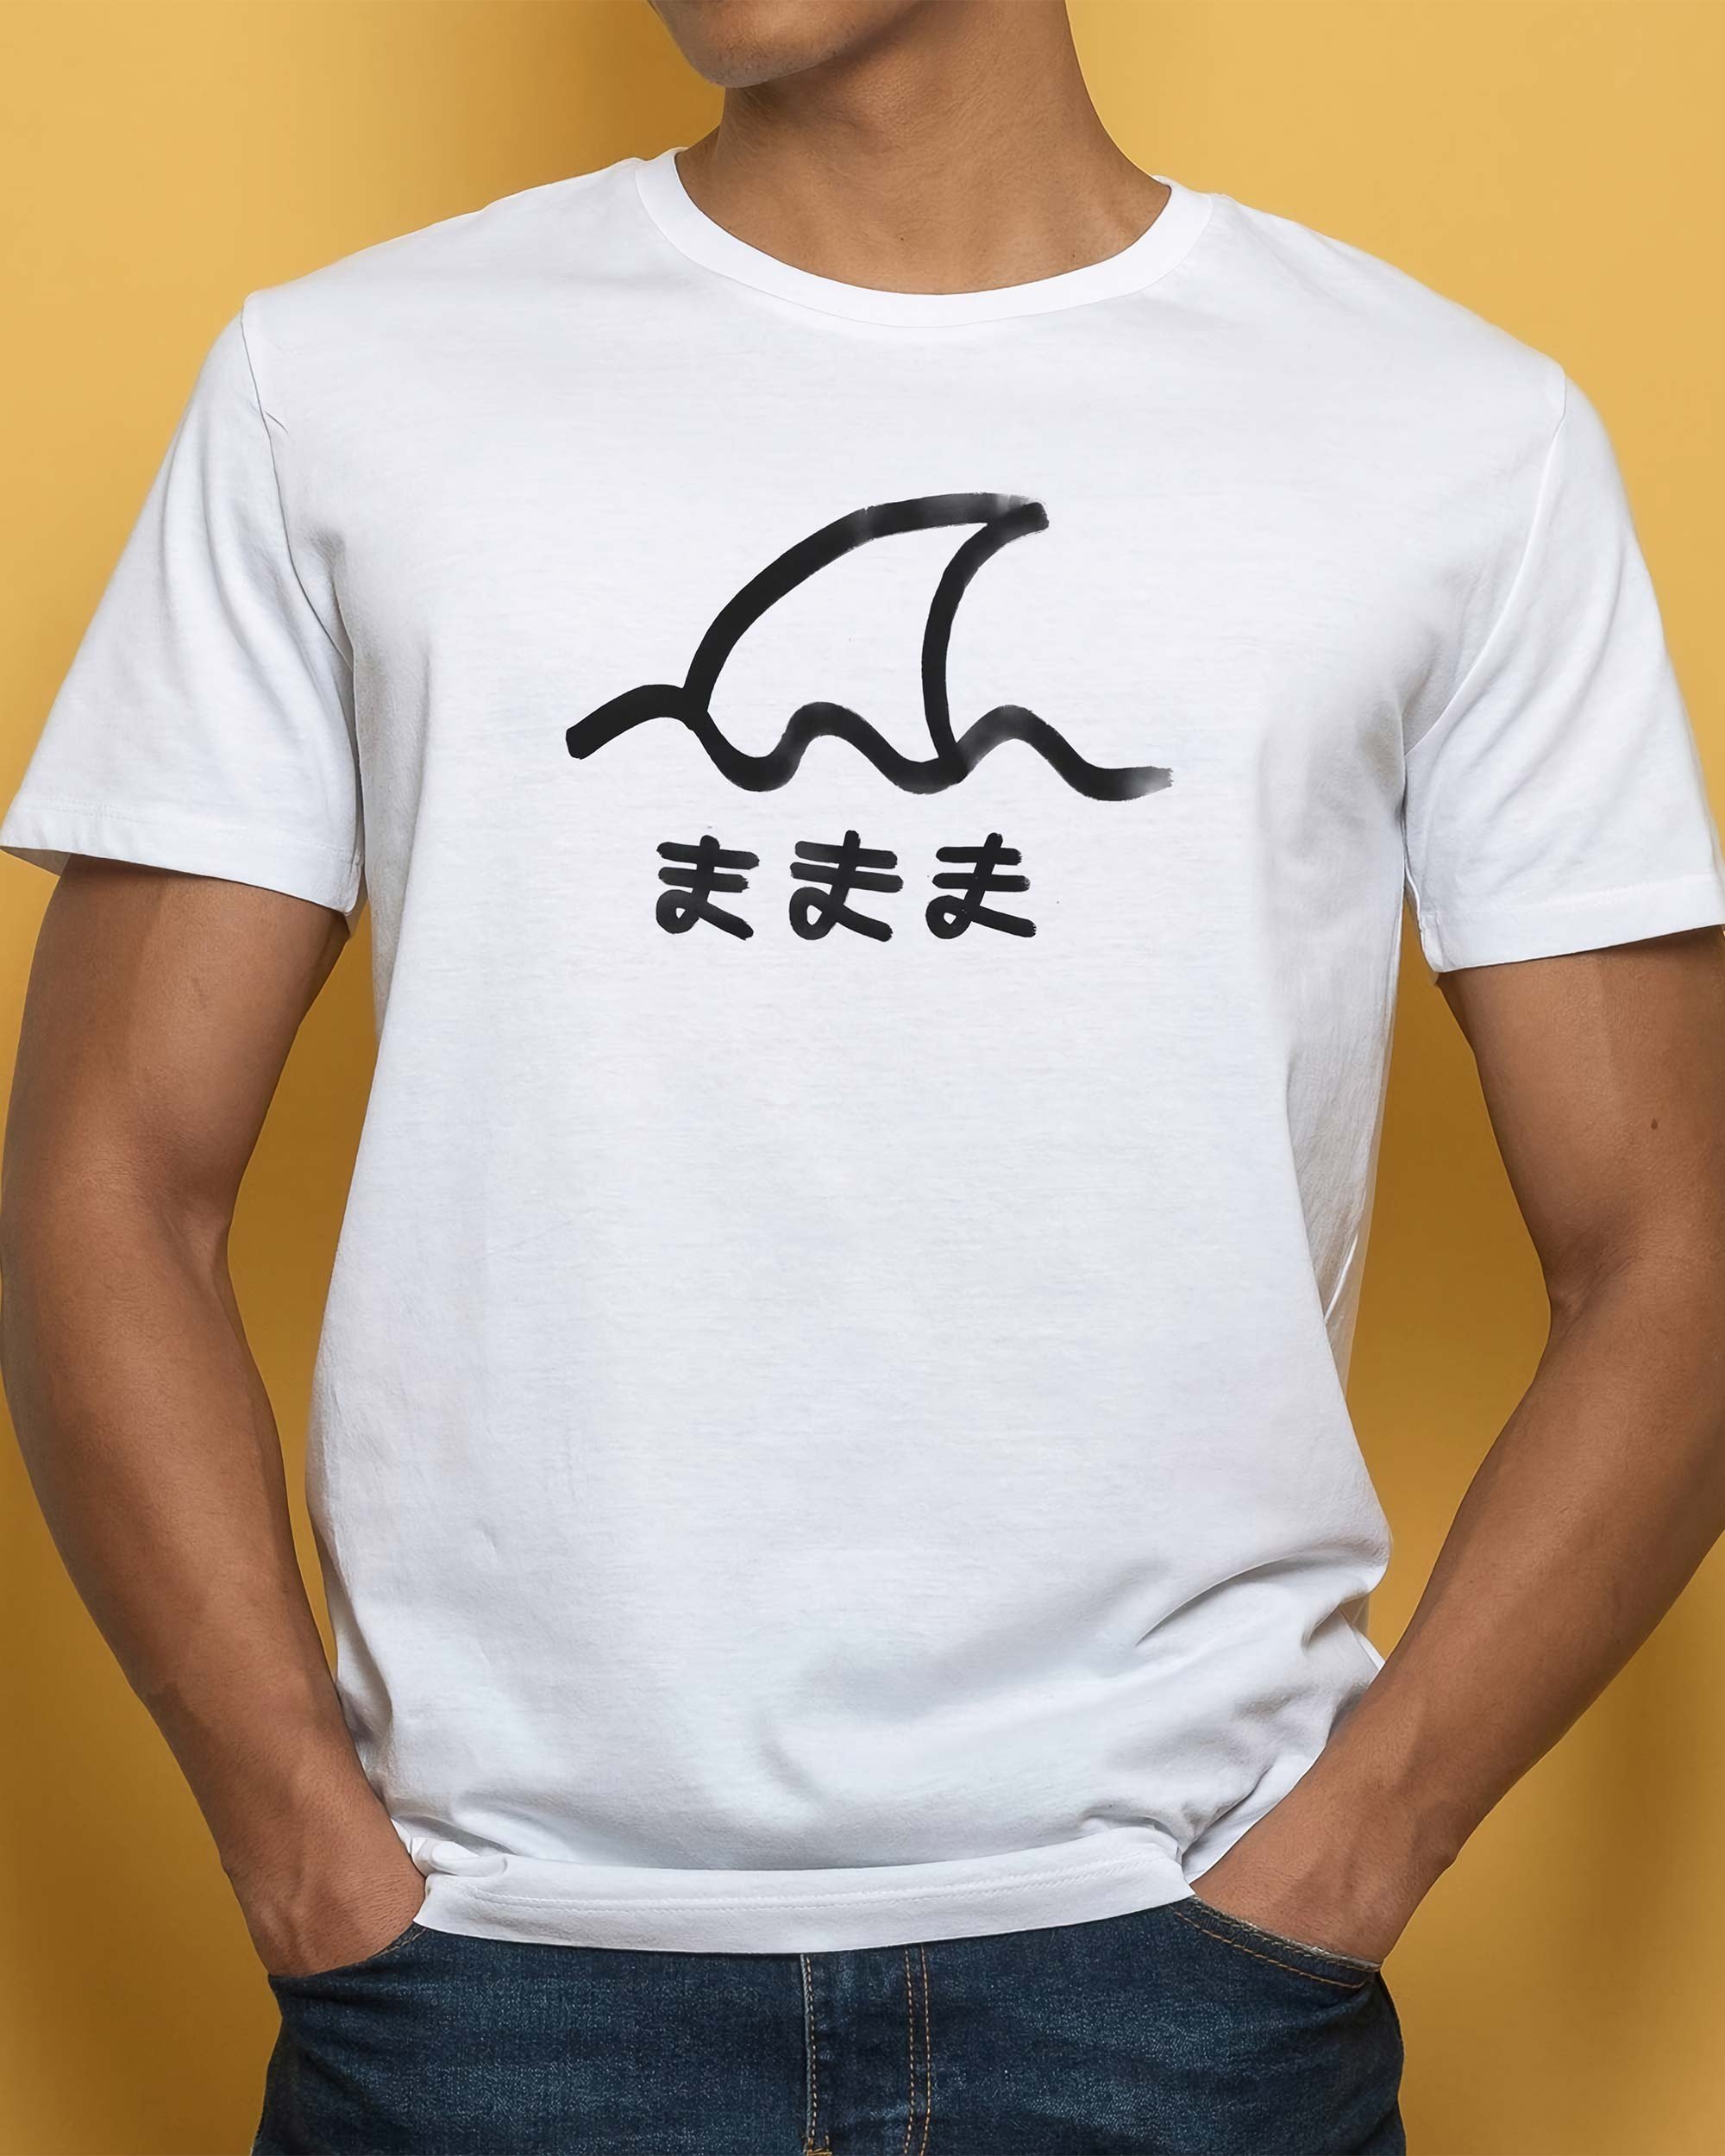 T-shirt Same de couleur Blanc par Aecho